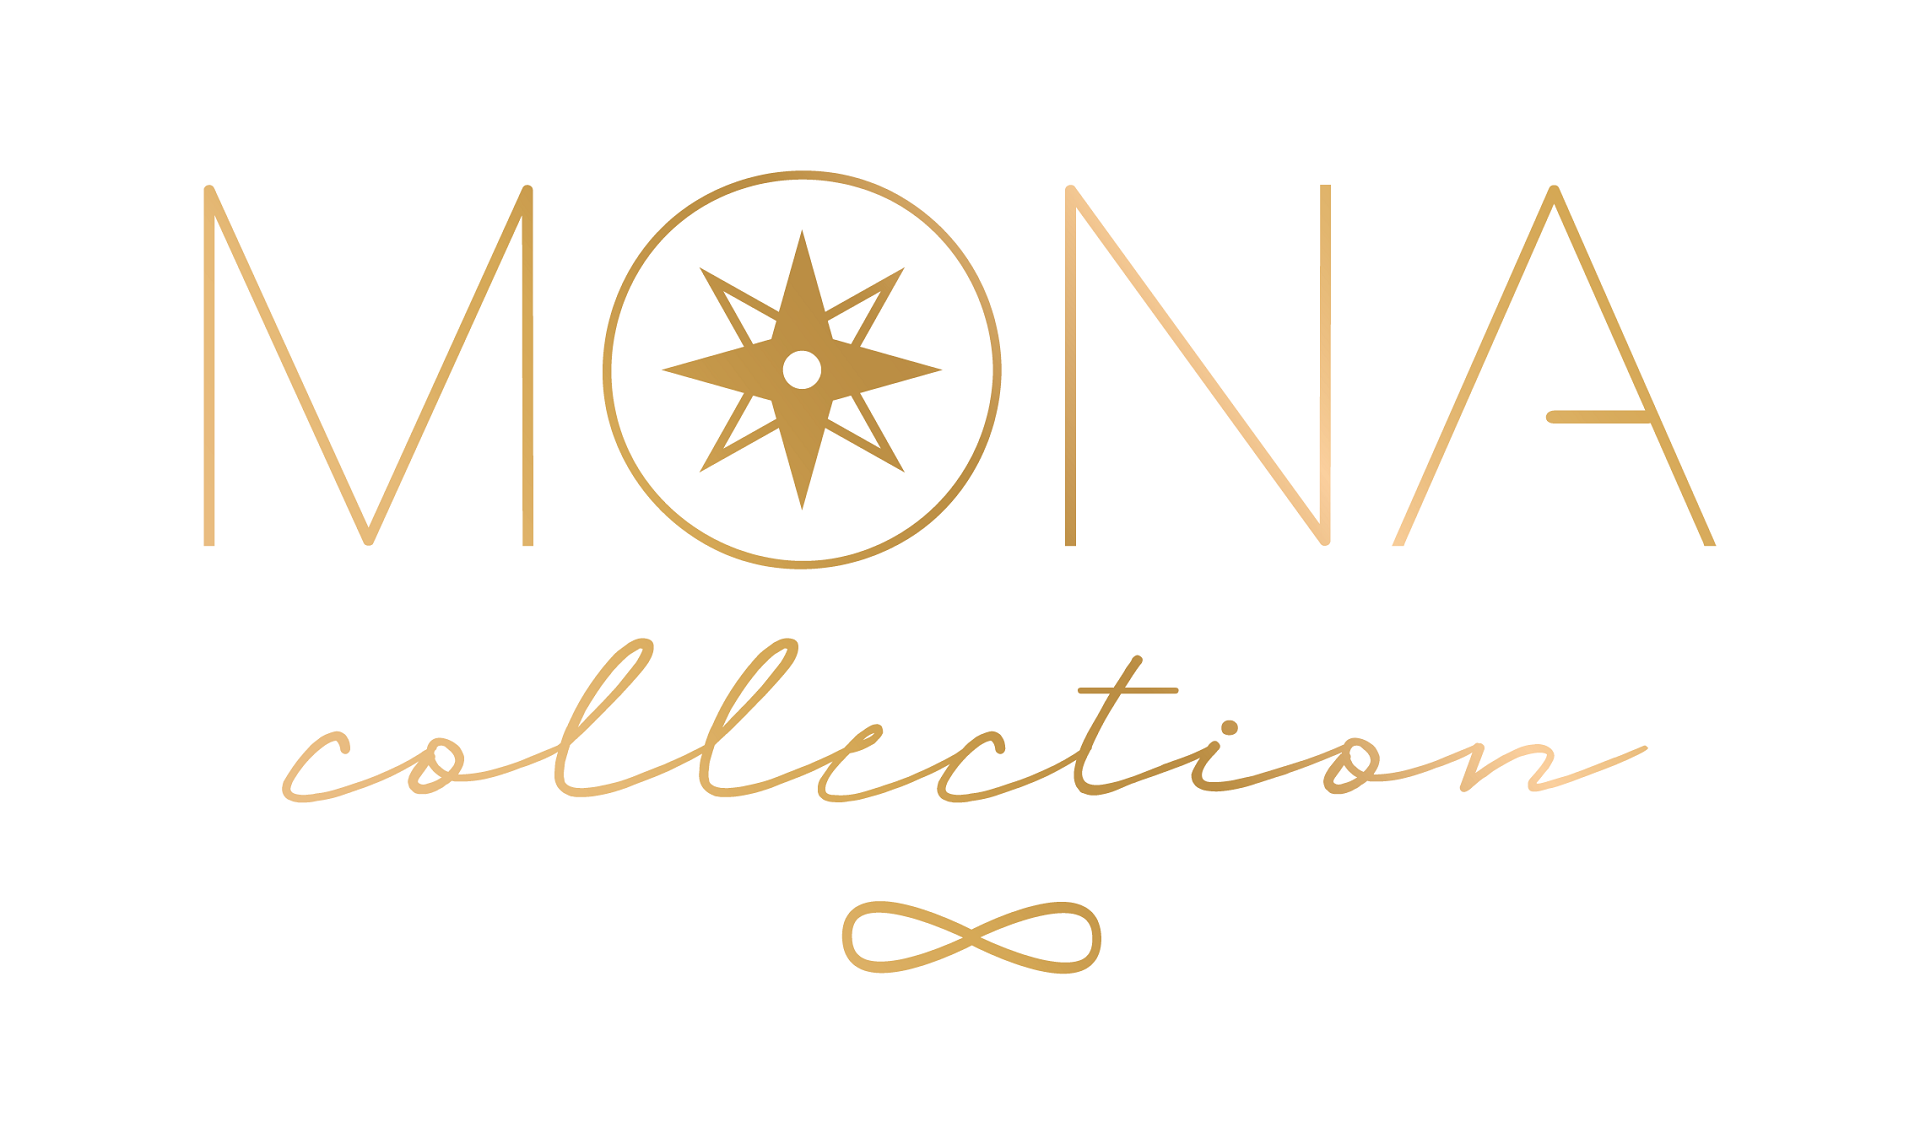 Mona Collection Logo